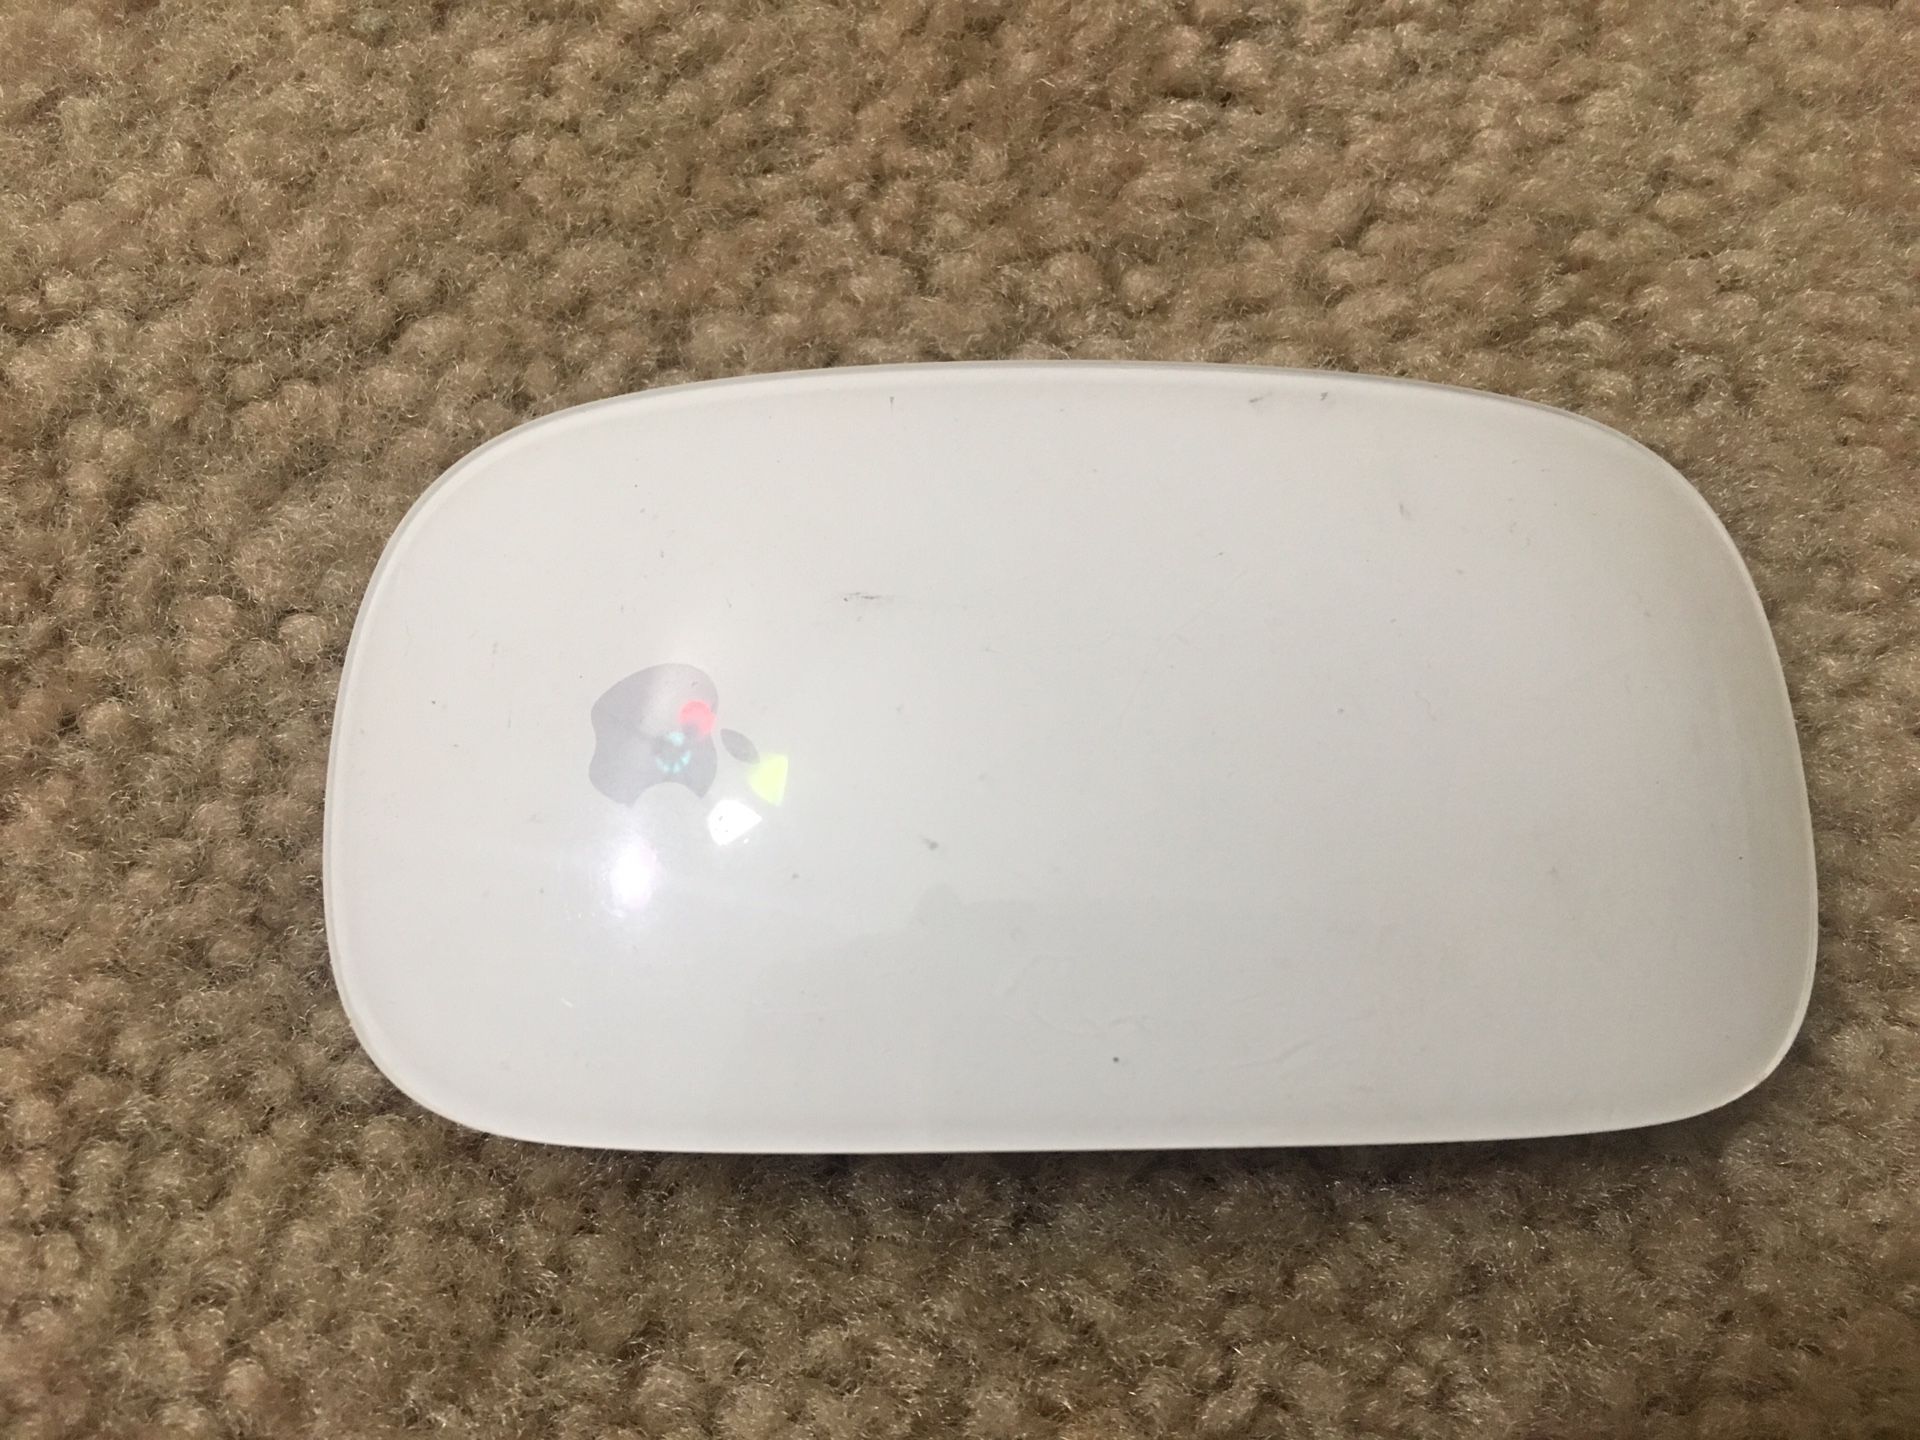 Apple magic mouse